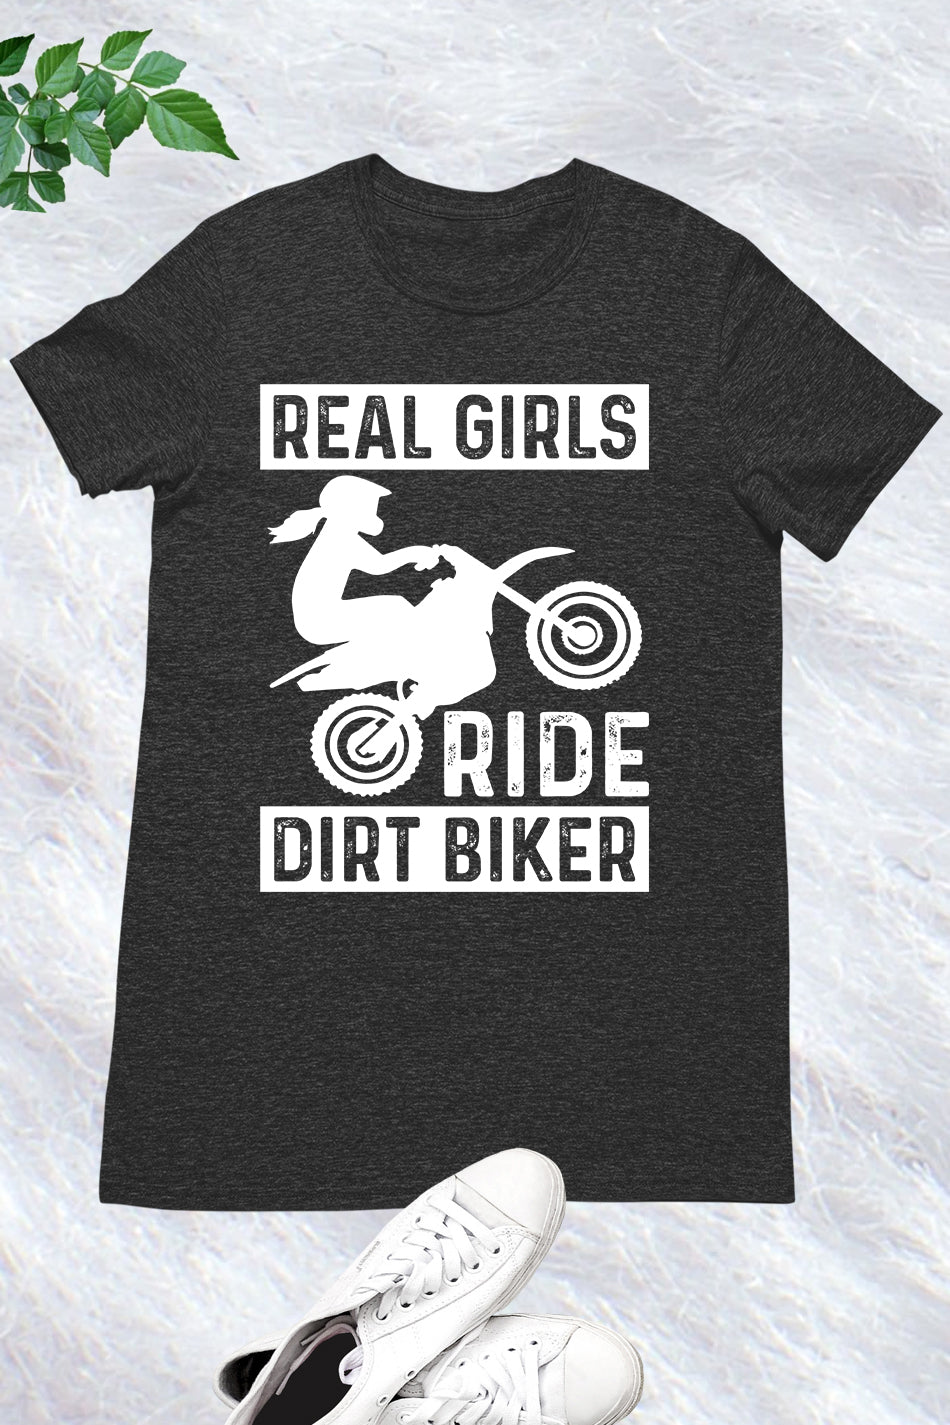 Real girls Ride Dirt Biker Shirt